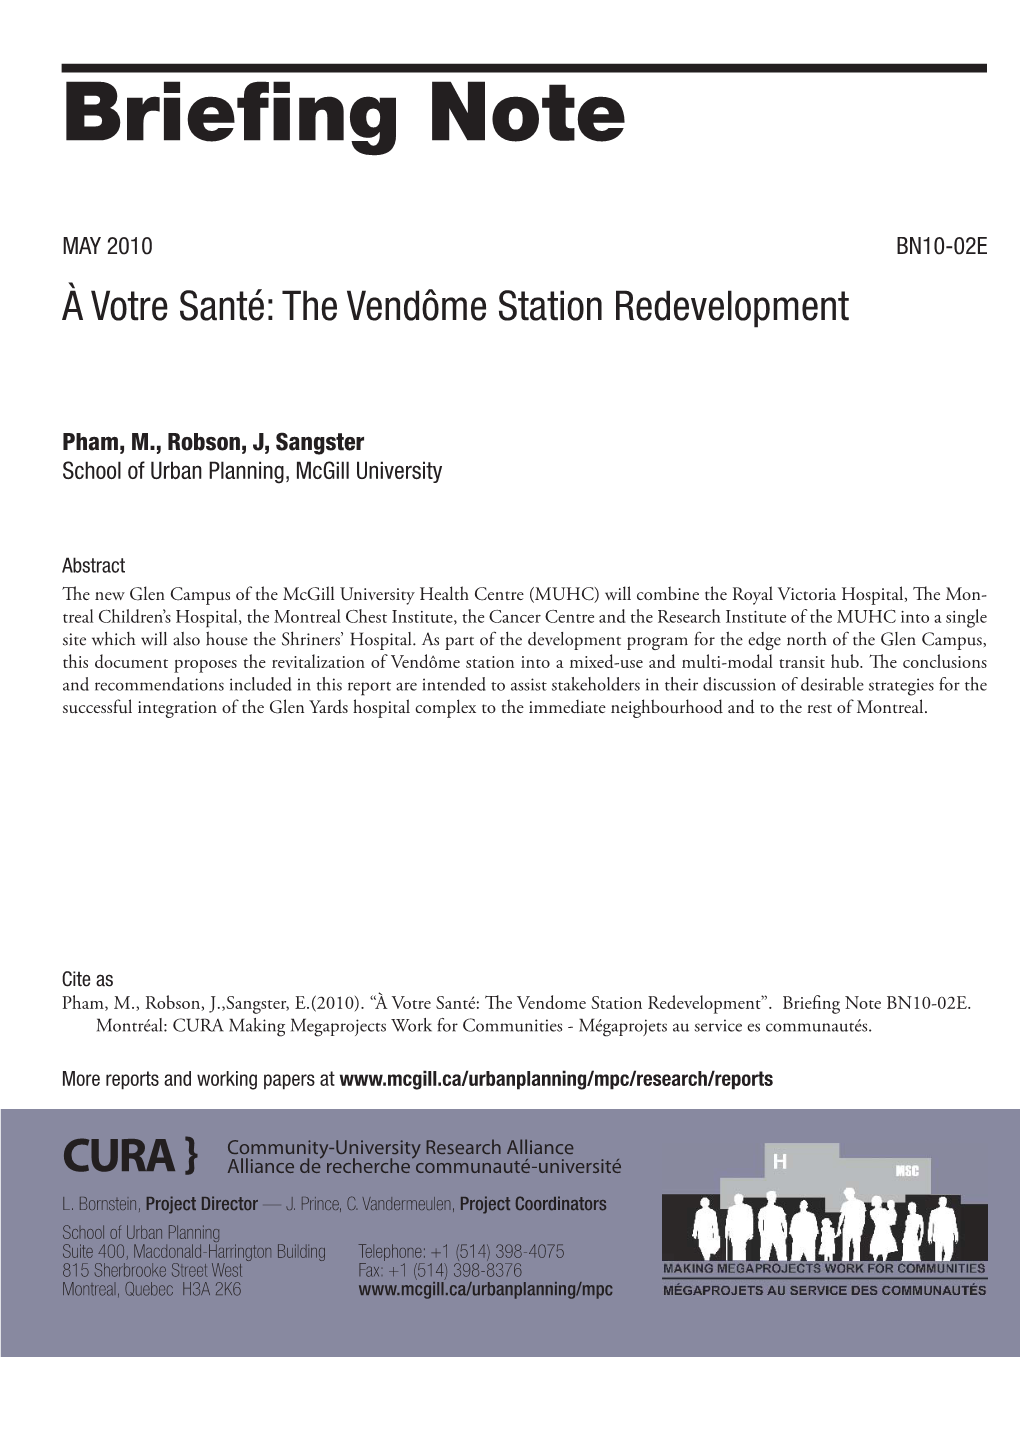 À Votre Santé: the Vendome Station Redevelopment